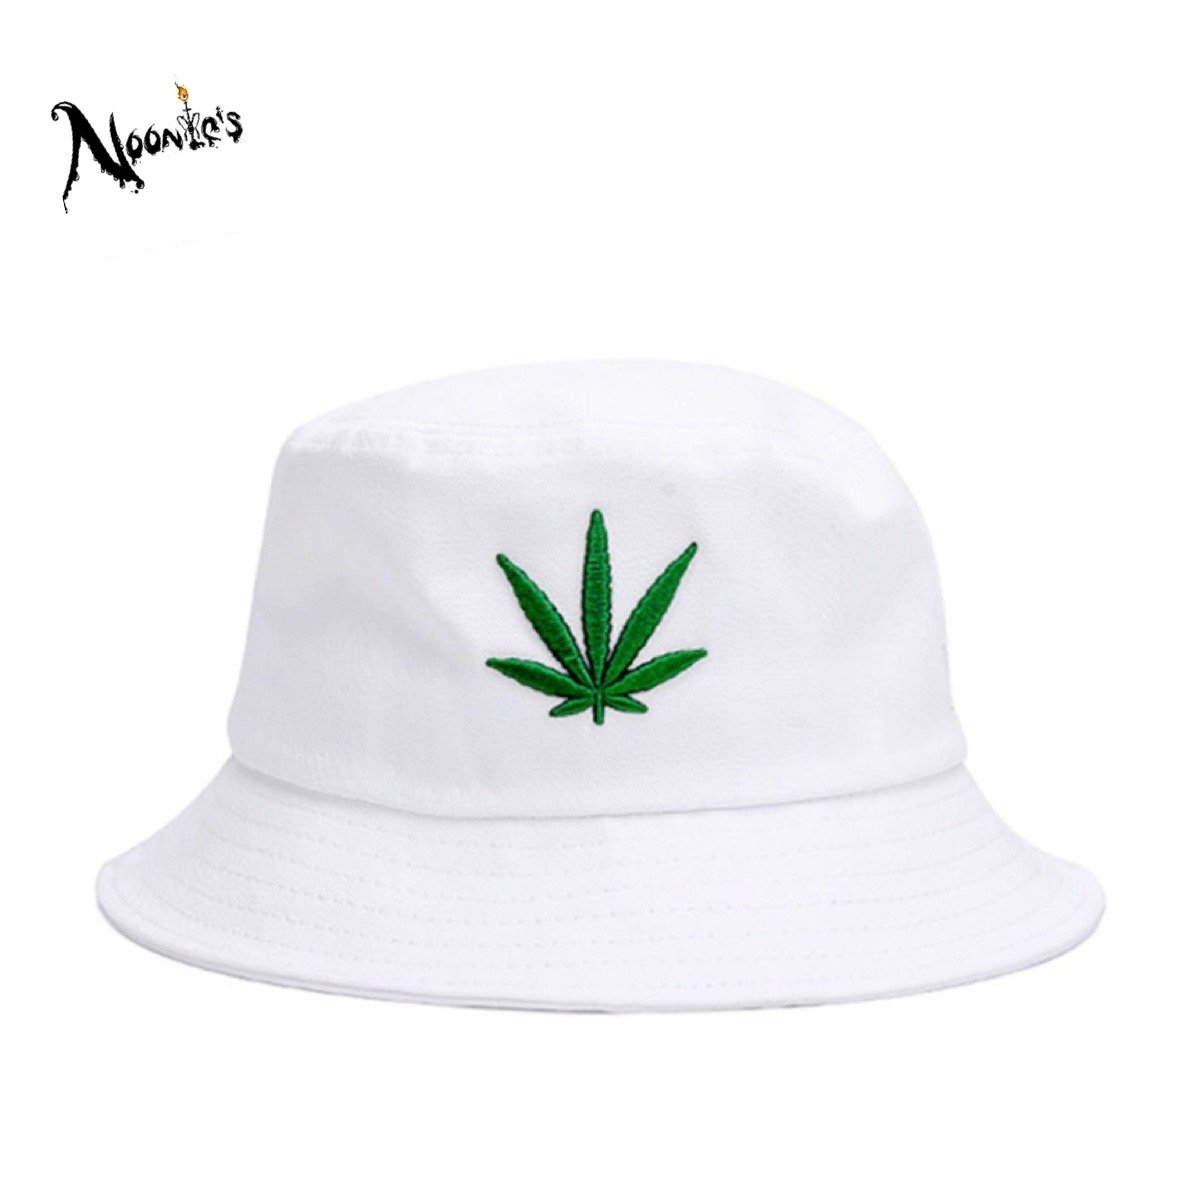 Image of Ganja leaf bucket hat